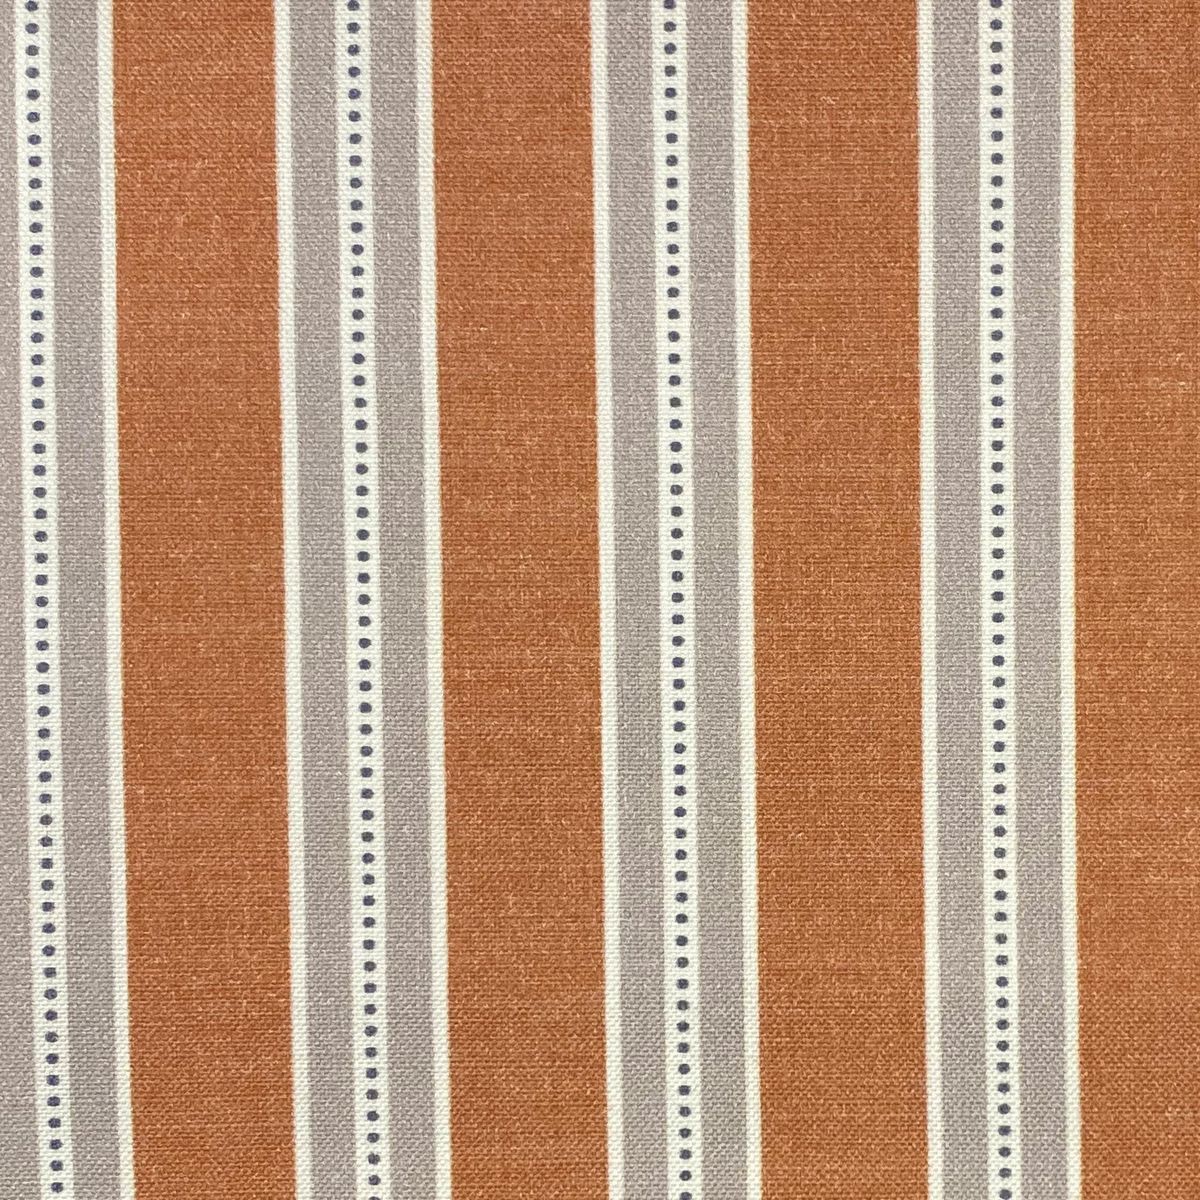 Drayton Tangerine Fabric by Chatham Glyn